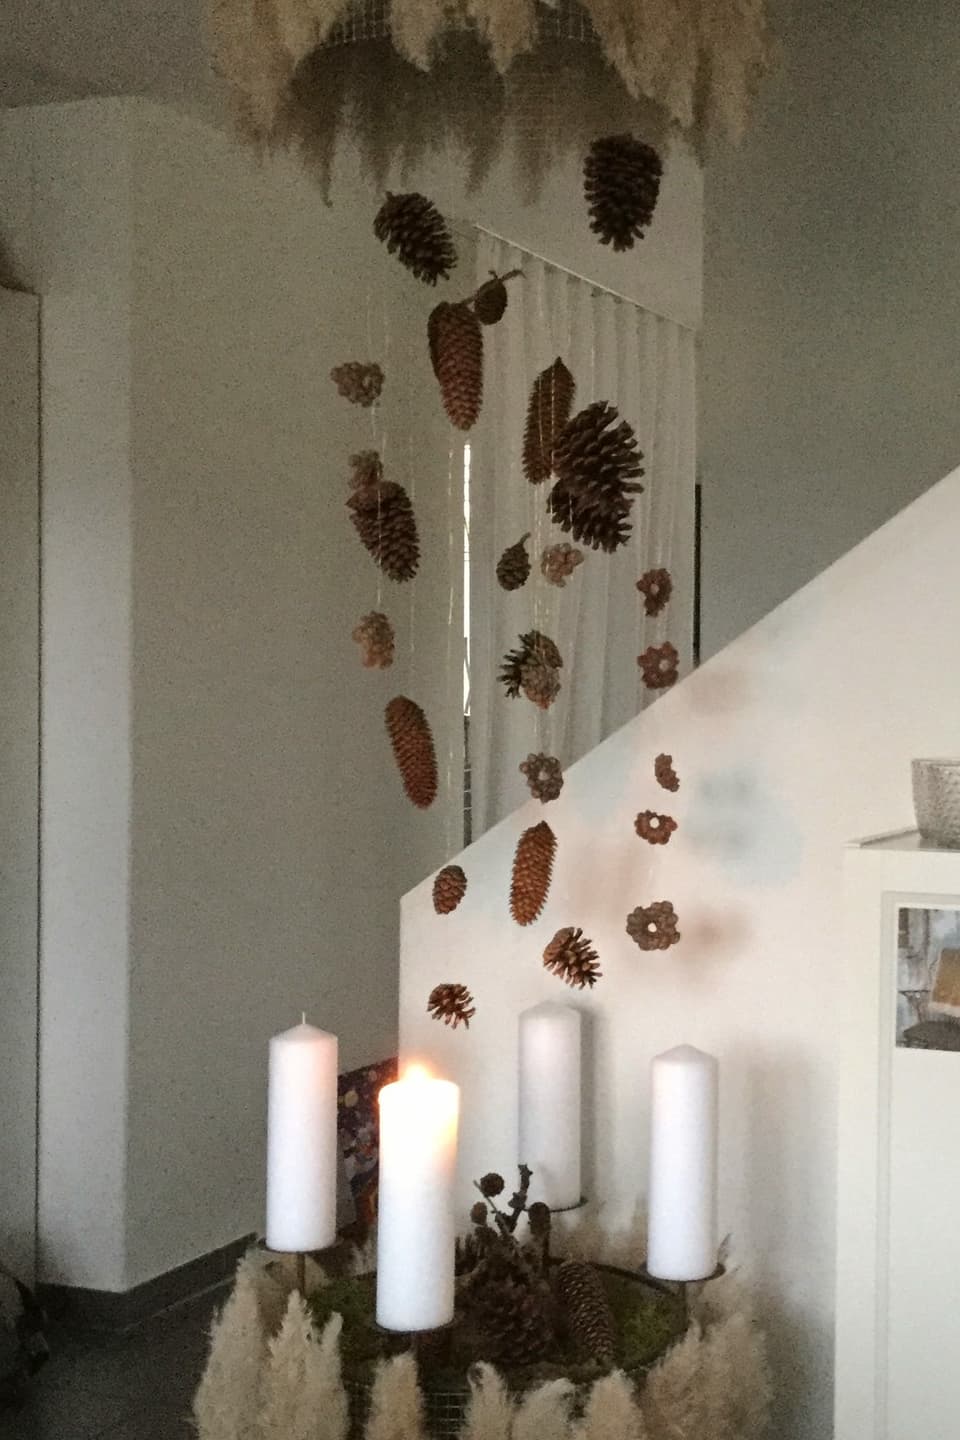 Tannenzapfen hängen in der Luft über vier weissen Kerzen.